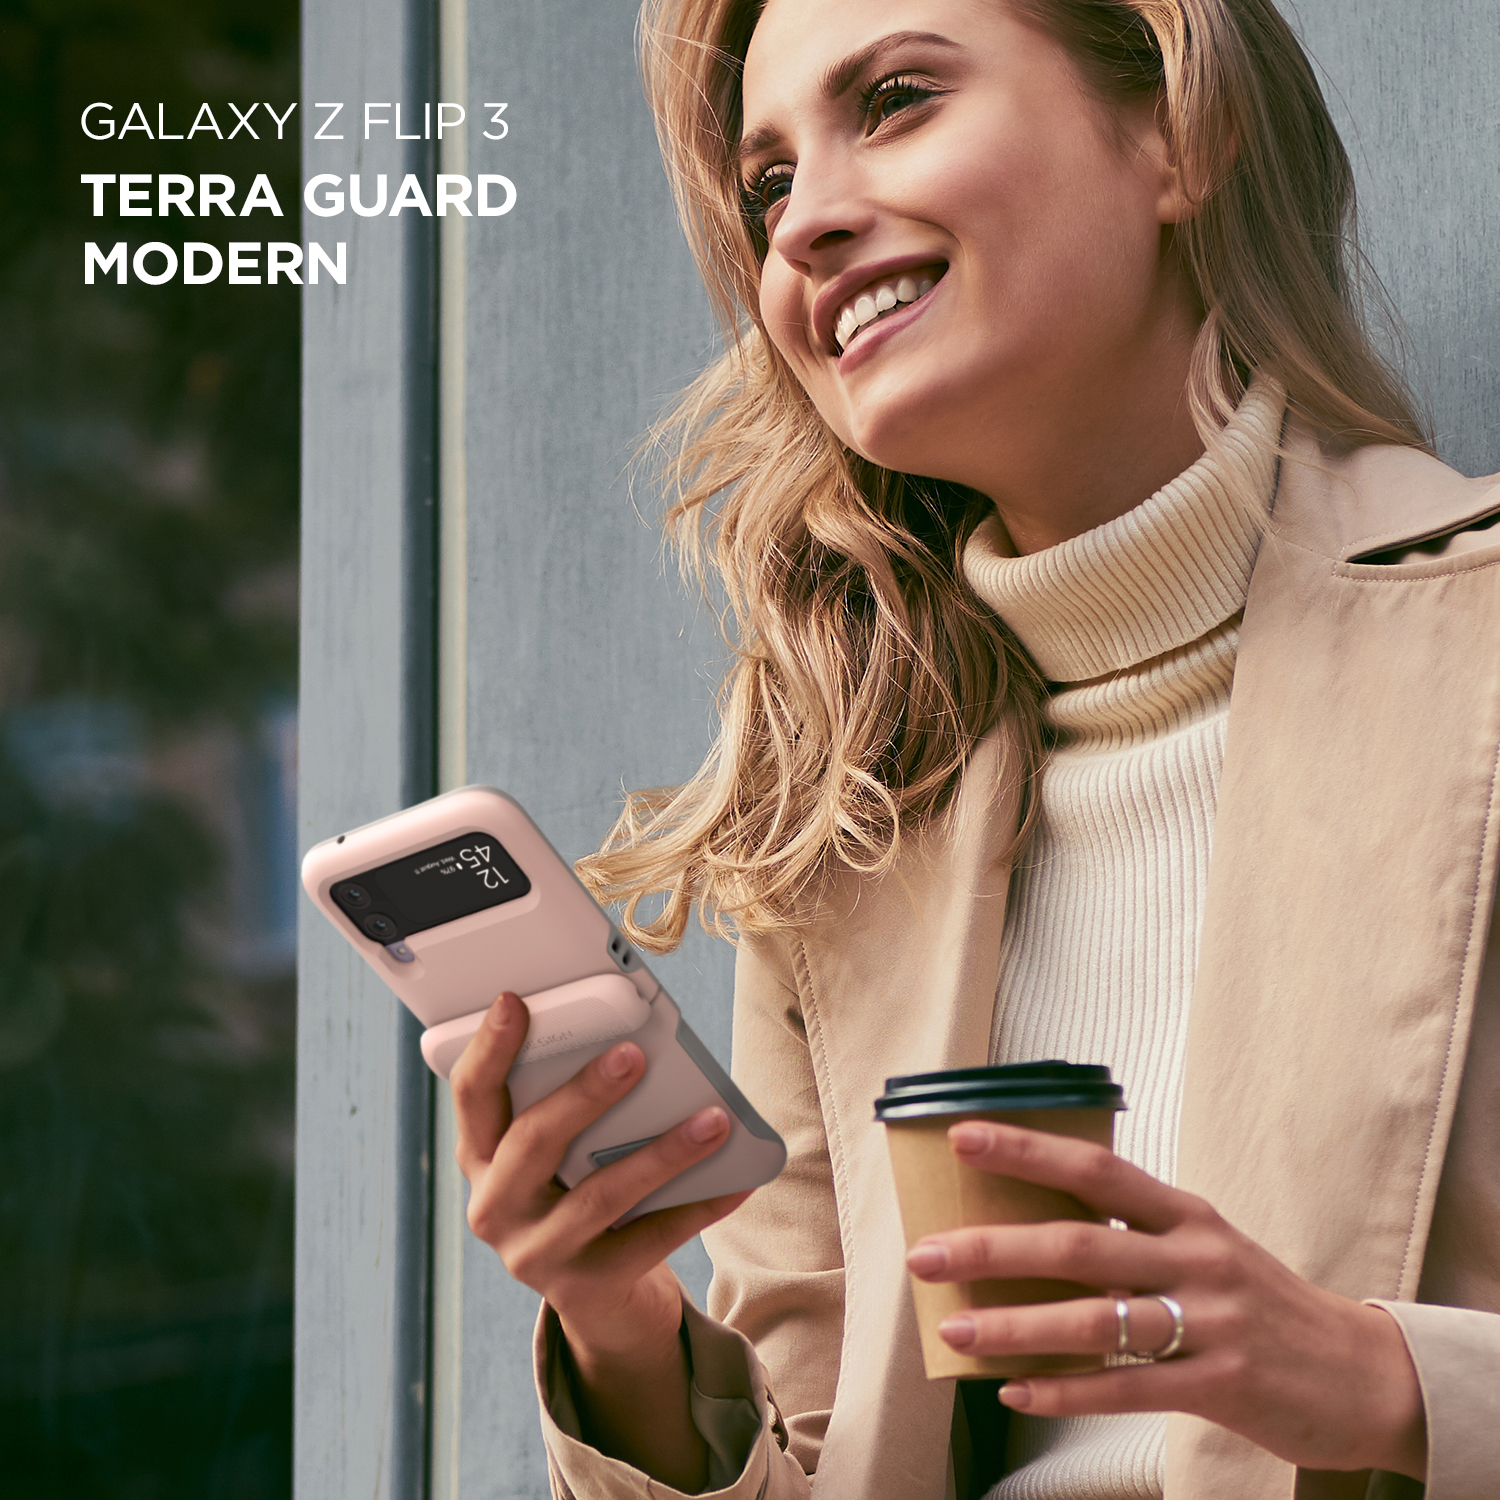 เคส VRS รุ่น Terra Guard Modern - Galaxy Z Flip 3 - สี Marine Green